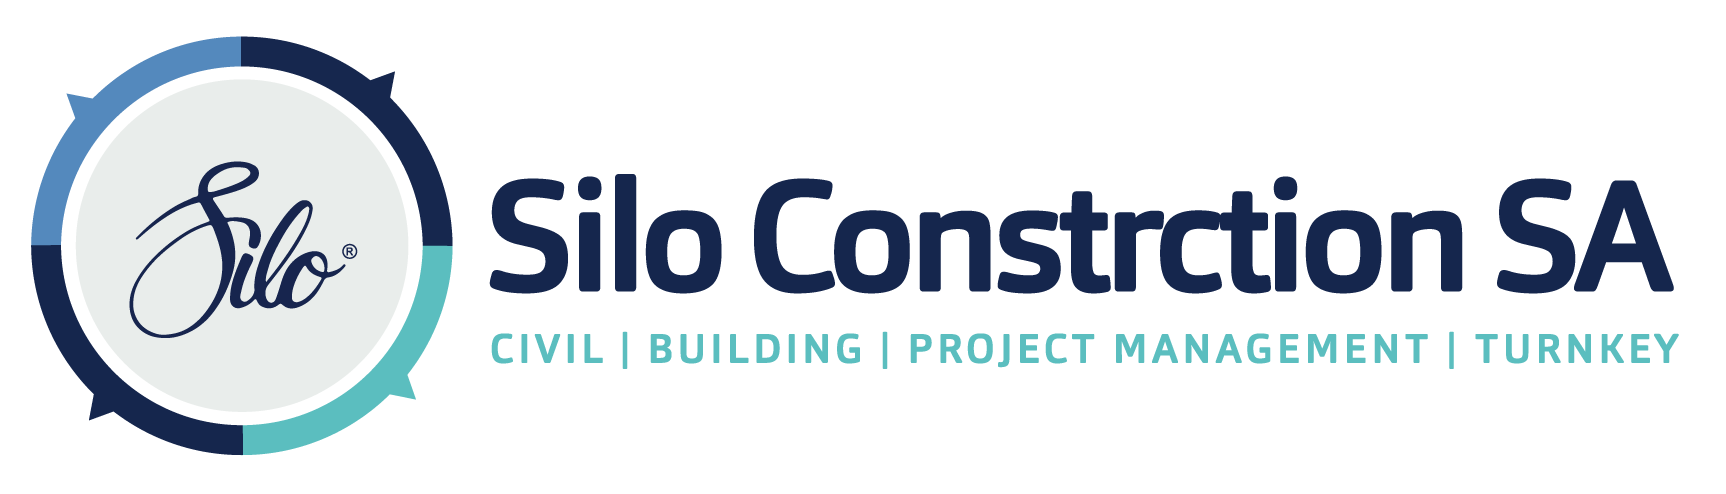 Silo Construction SA